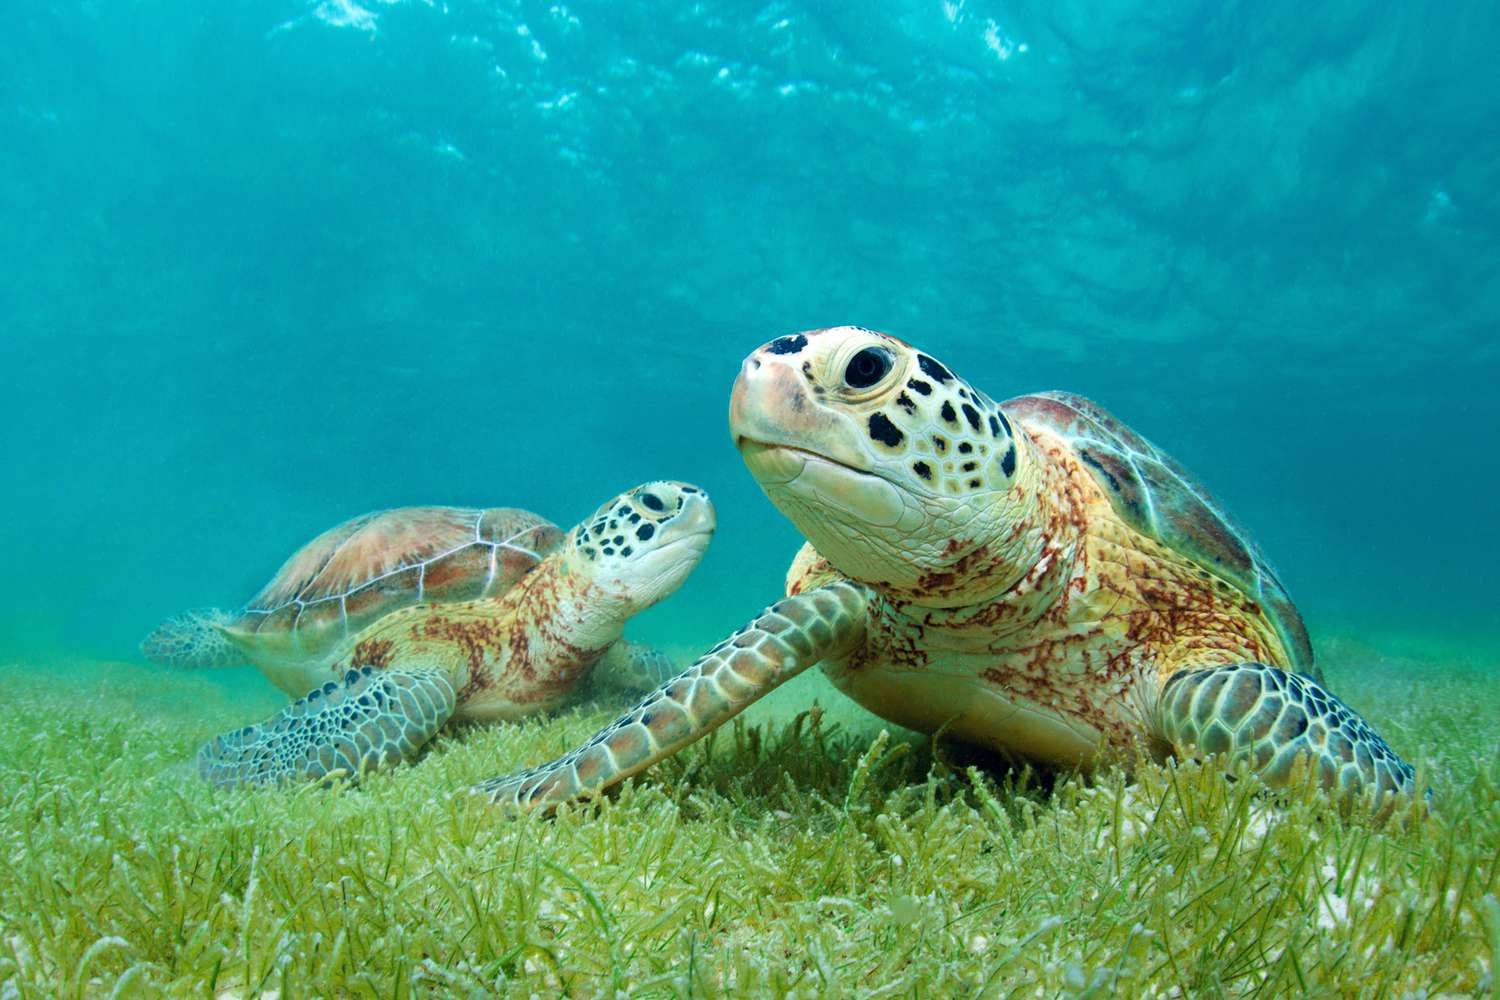  Are Sea Turtles Herbivores